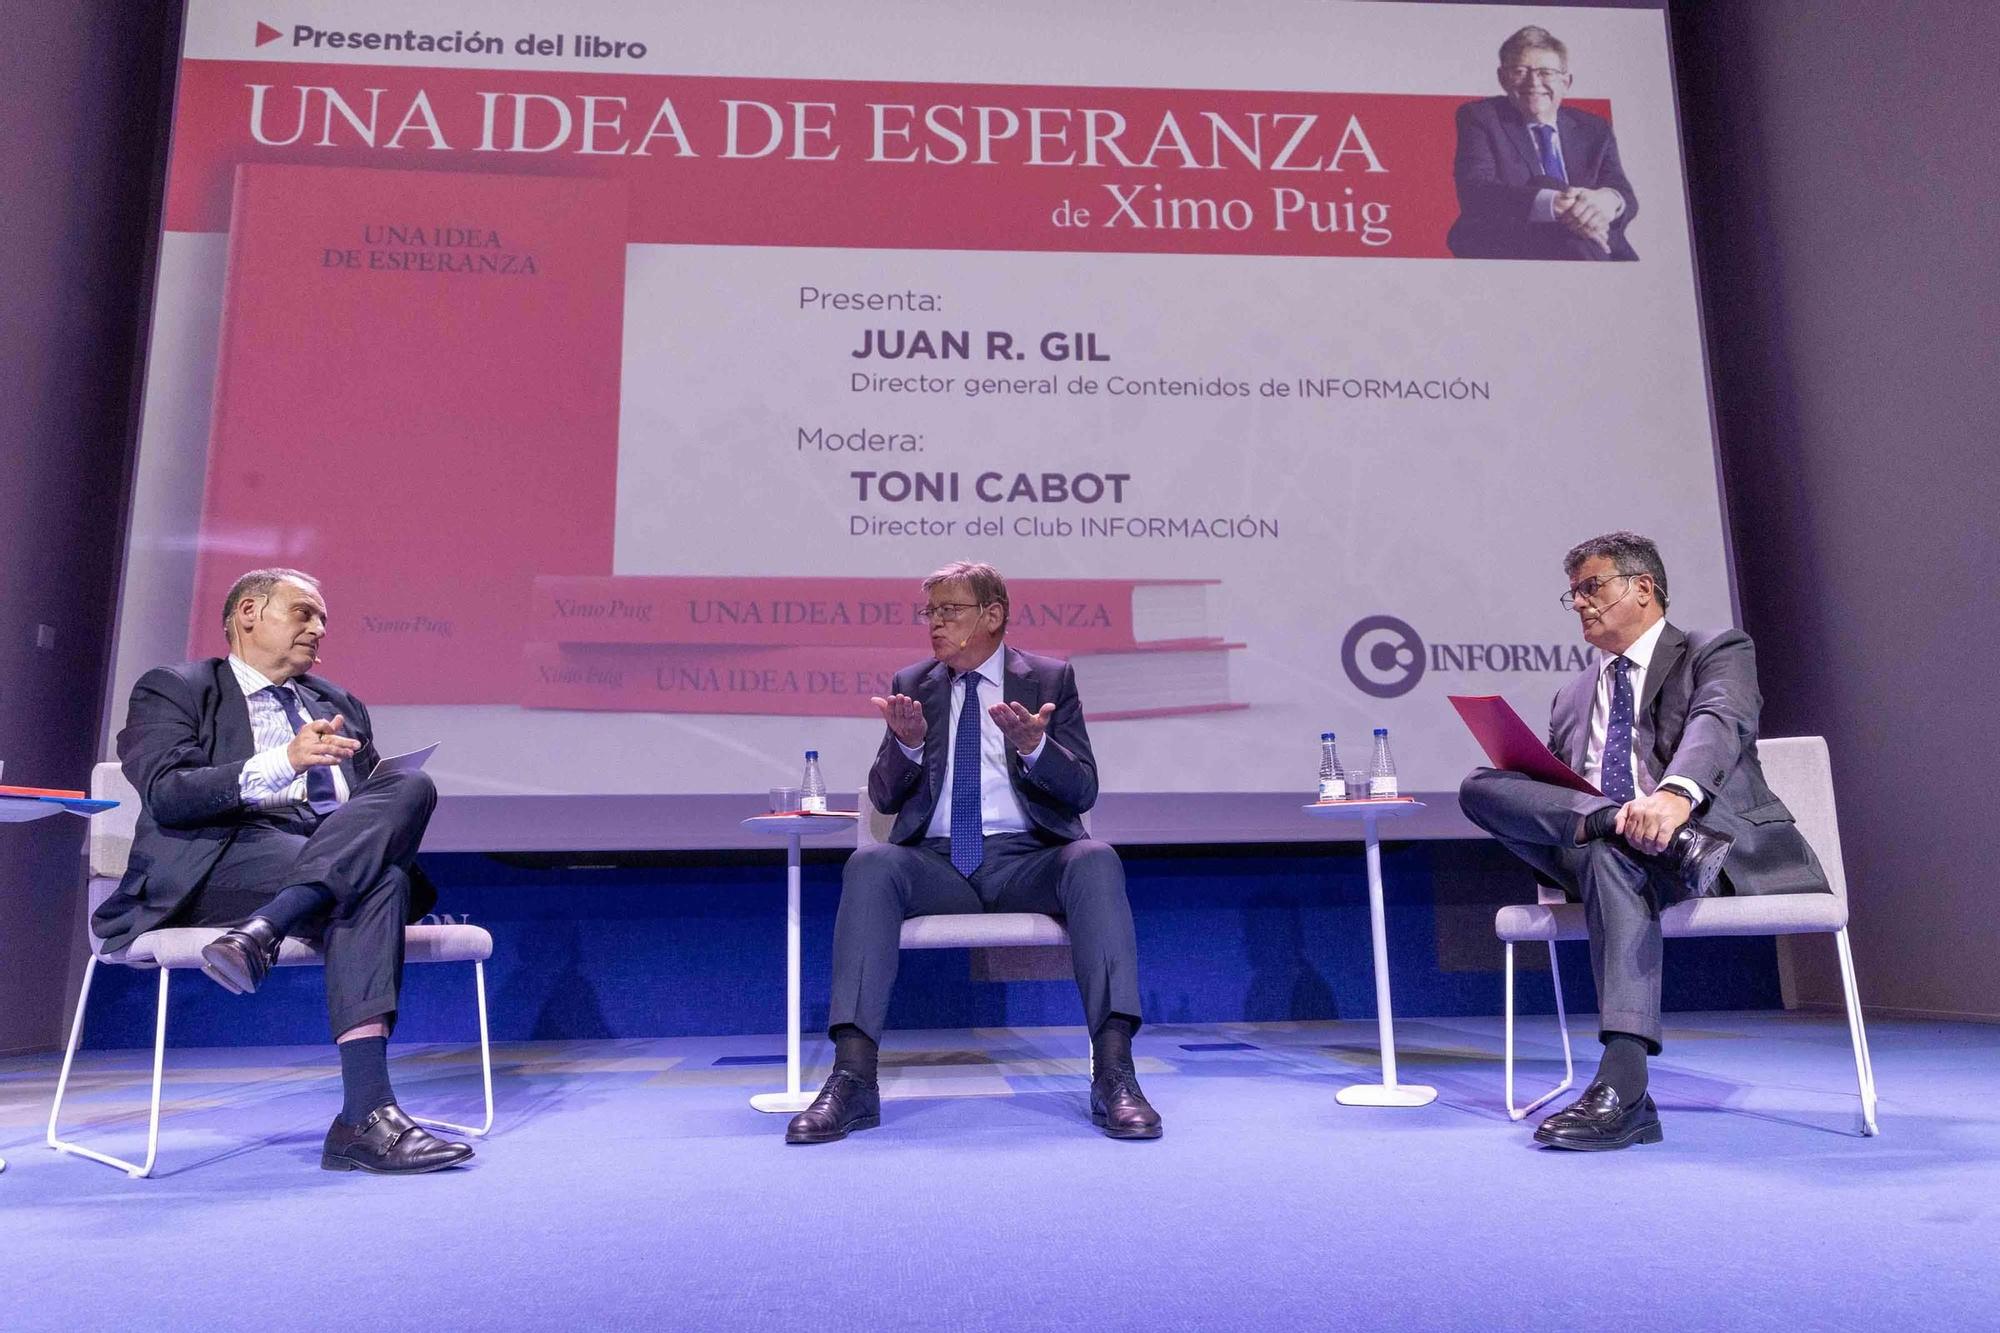 Presentación del libro de Ximo Puig "Una Idea de esperanza" en el Club Información